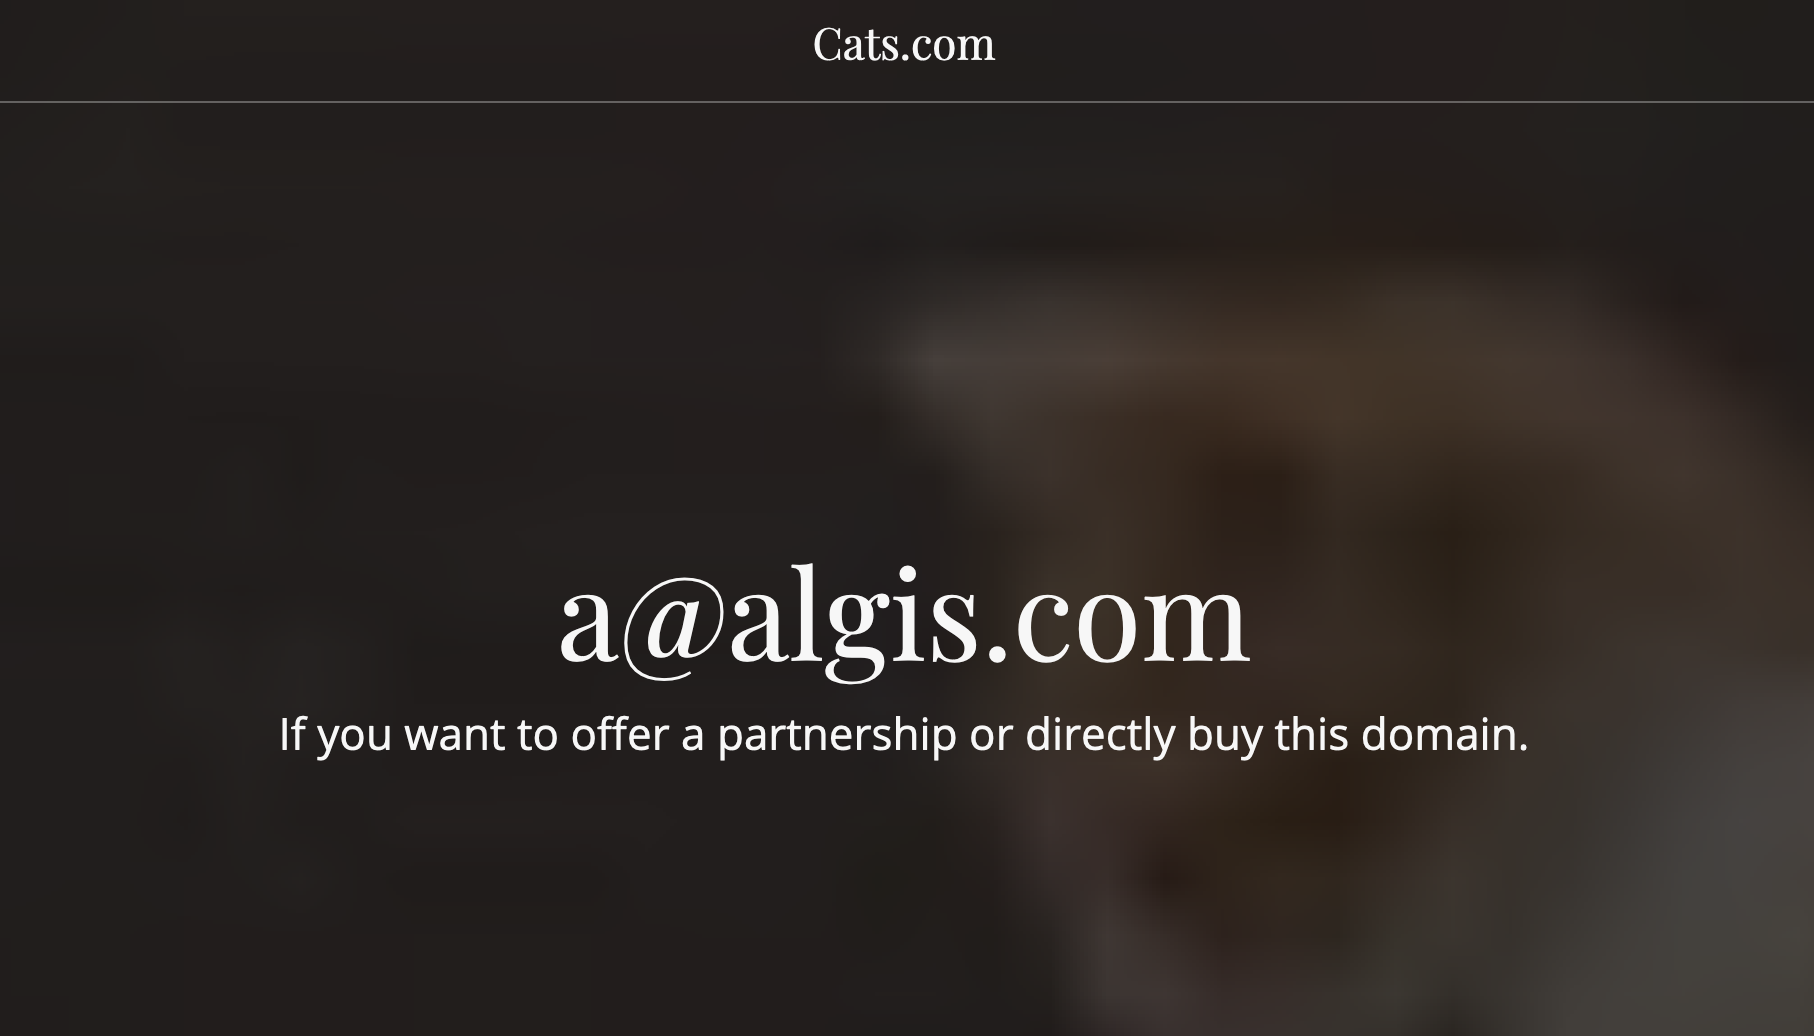 低于50万美元都免谈，域名cats.com真值100万美元吗？